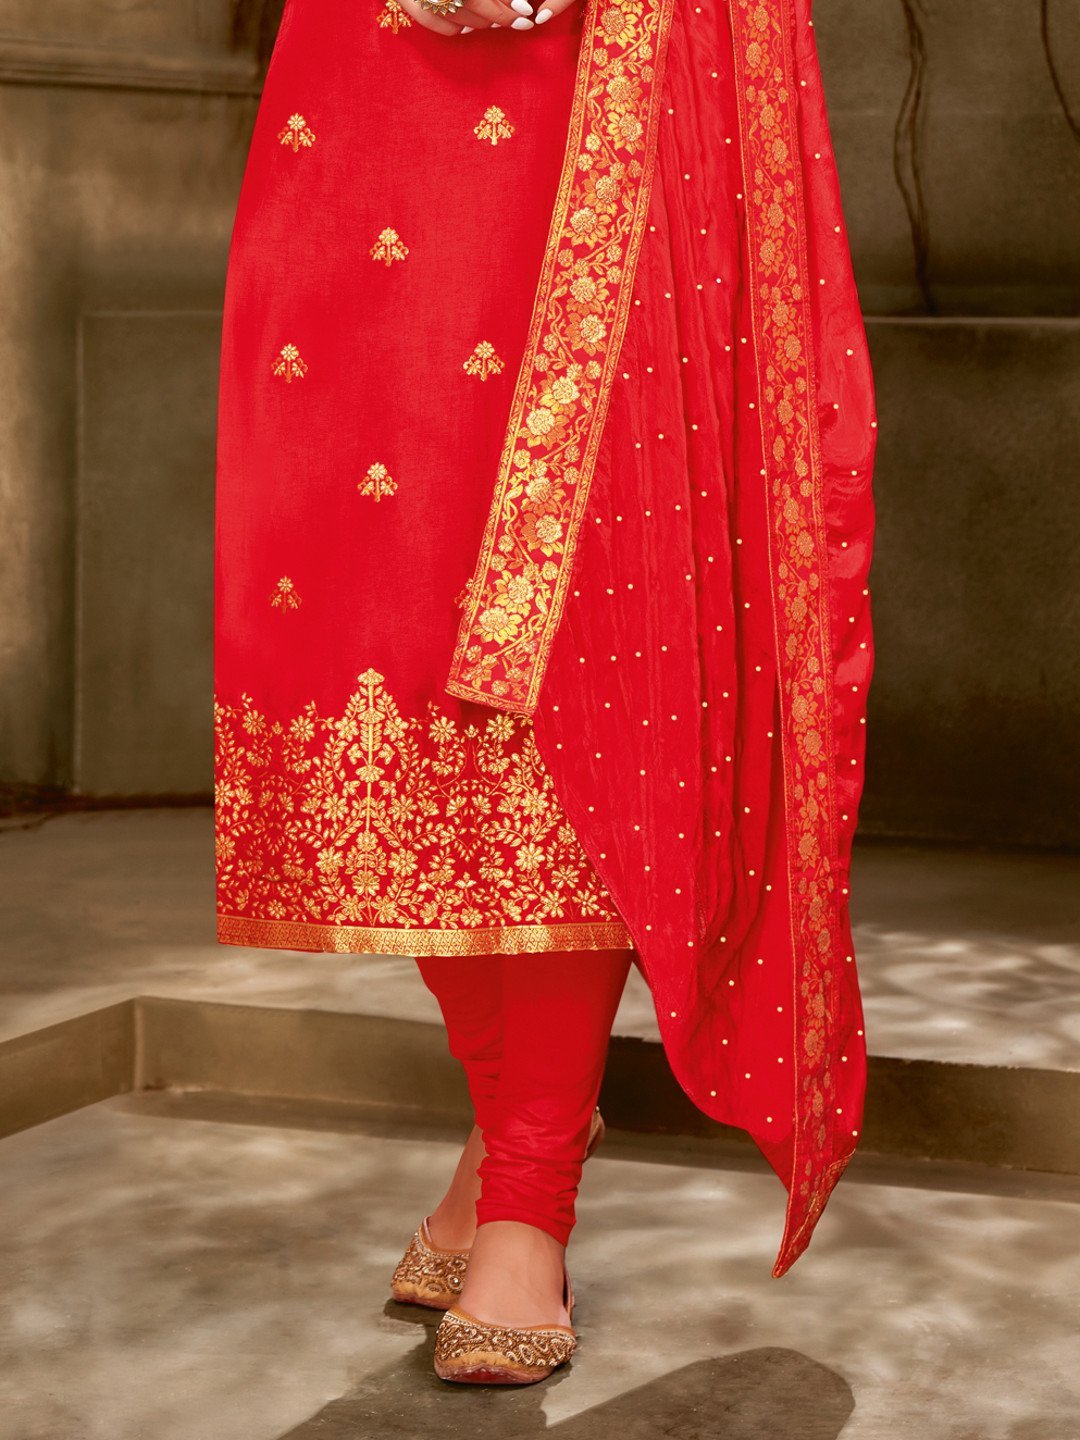 Zari Work Red Cotton Un-Stitched Suit with Printed Dupatta - Stilento